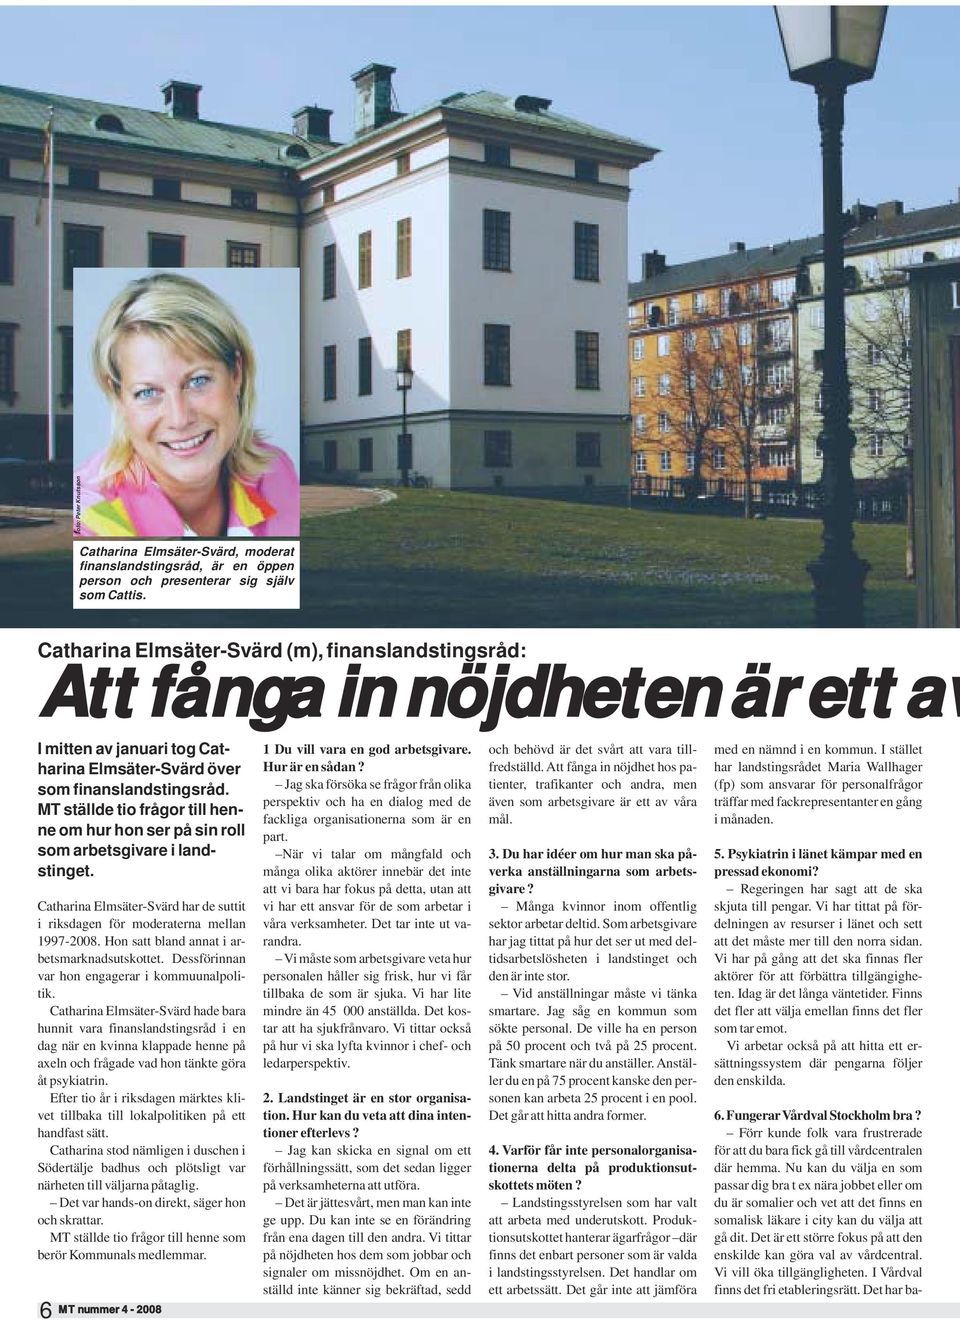 MT ställde tio frågor till henne om hur hon ser på sin roll som arbetsgivare i landstinget. Catharina Elmsäter-Svärd har de suttit i riksdagen för moderaterna mellan 1997-2008.